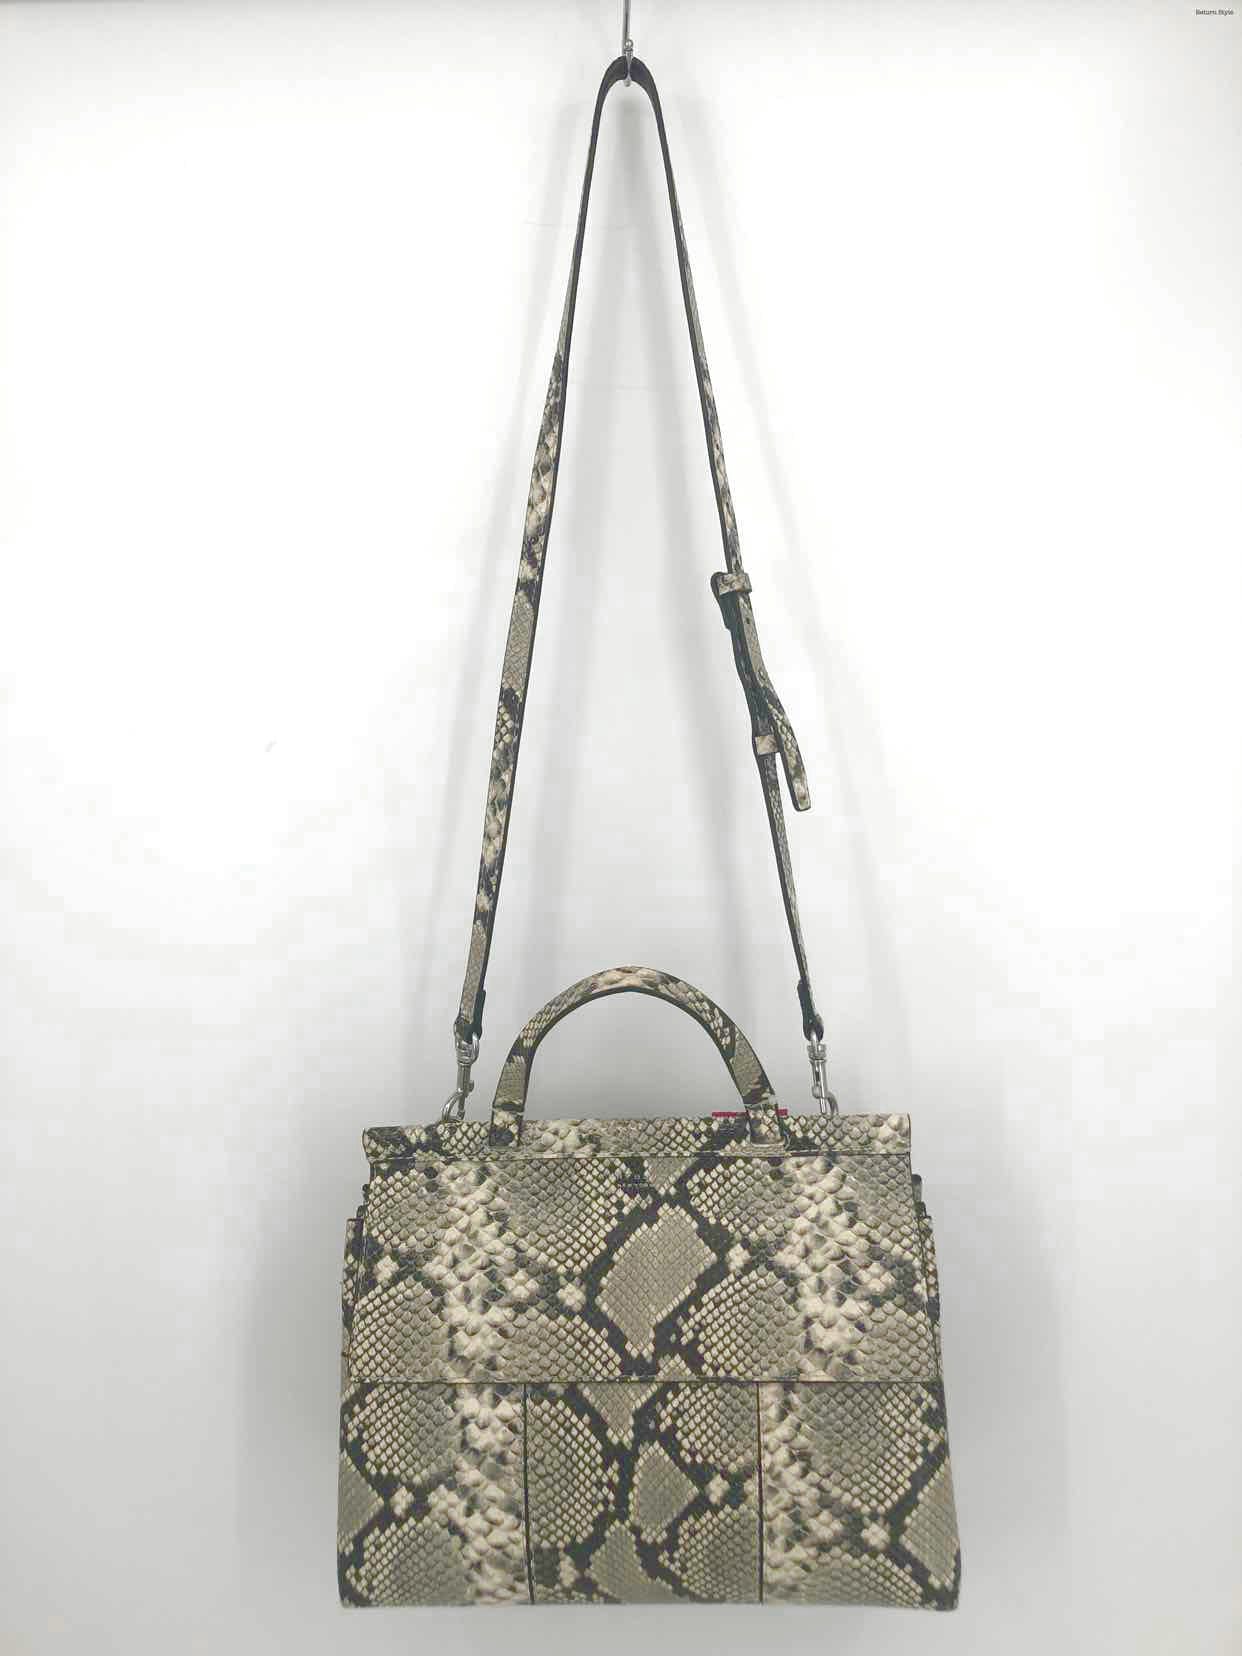 Tory Burch crossbody Handbag Gold Leather ShoulderBag Clutch Purse 11X6.25  | eBay